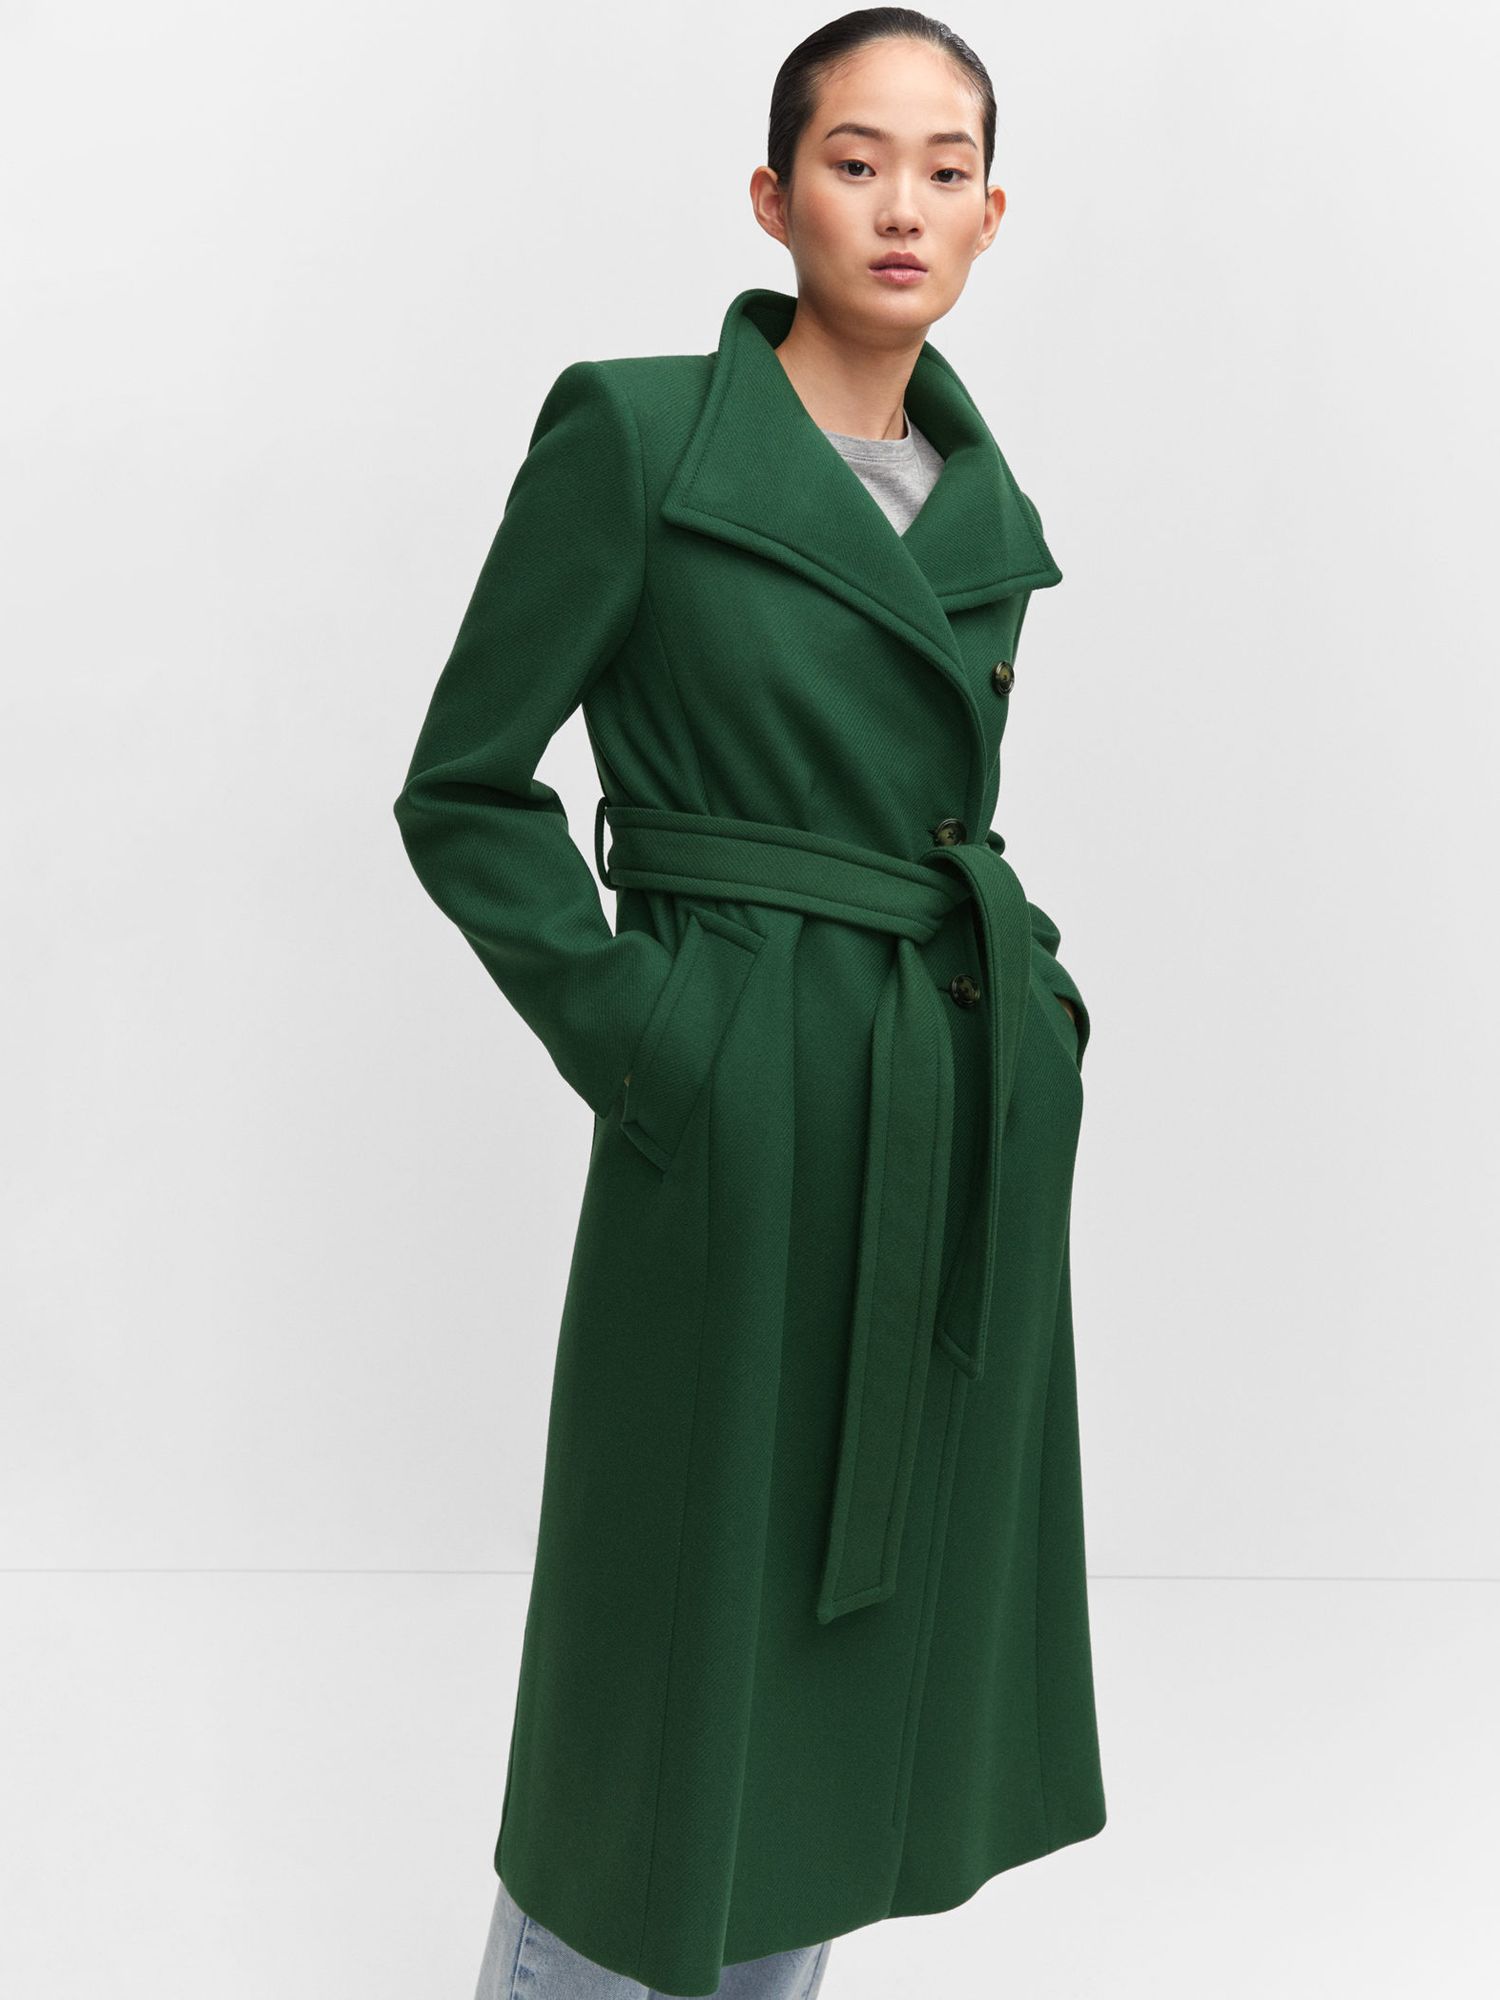 Mango Sirenita Wool Blend Long Belted Coat, Green at John Lewis & Partners